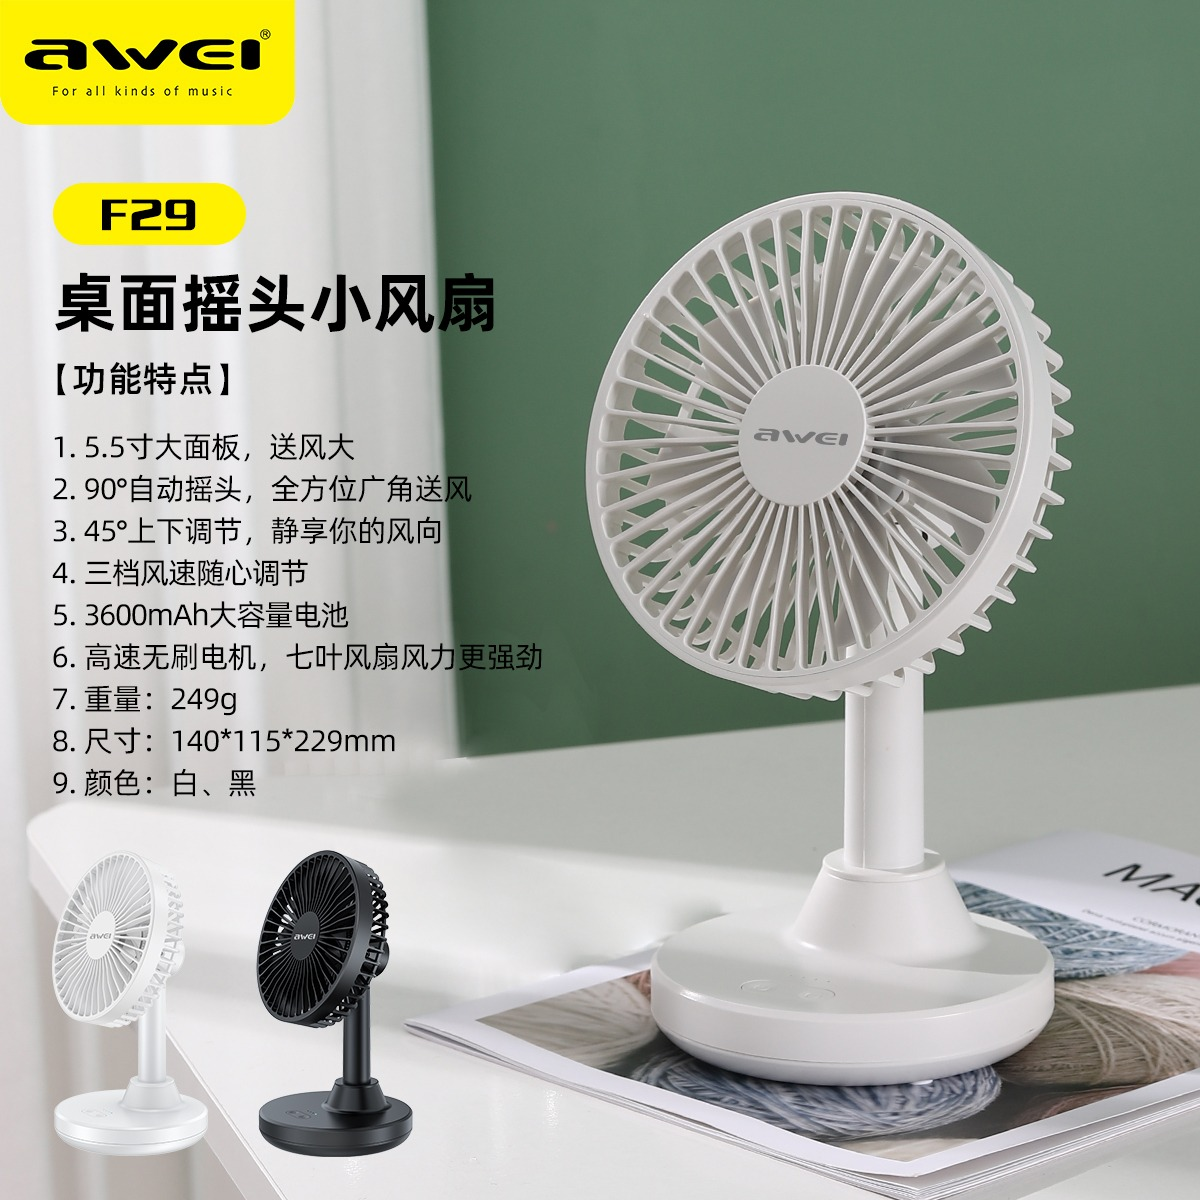 Awei F29 Mini Desktop Oscillating Rechargeable Fan